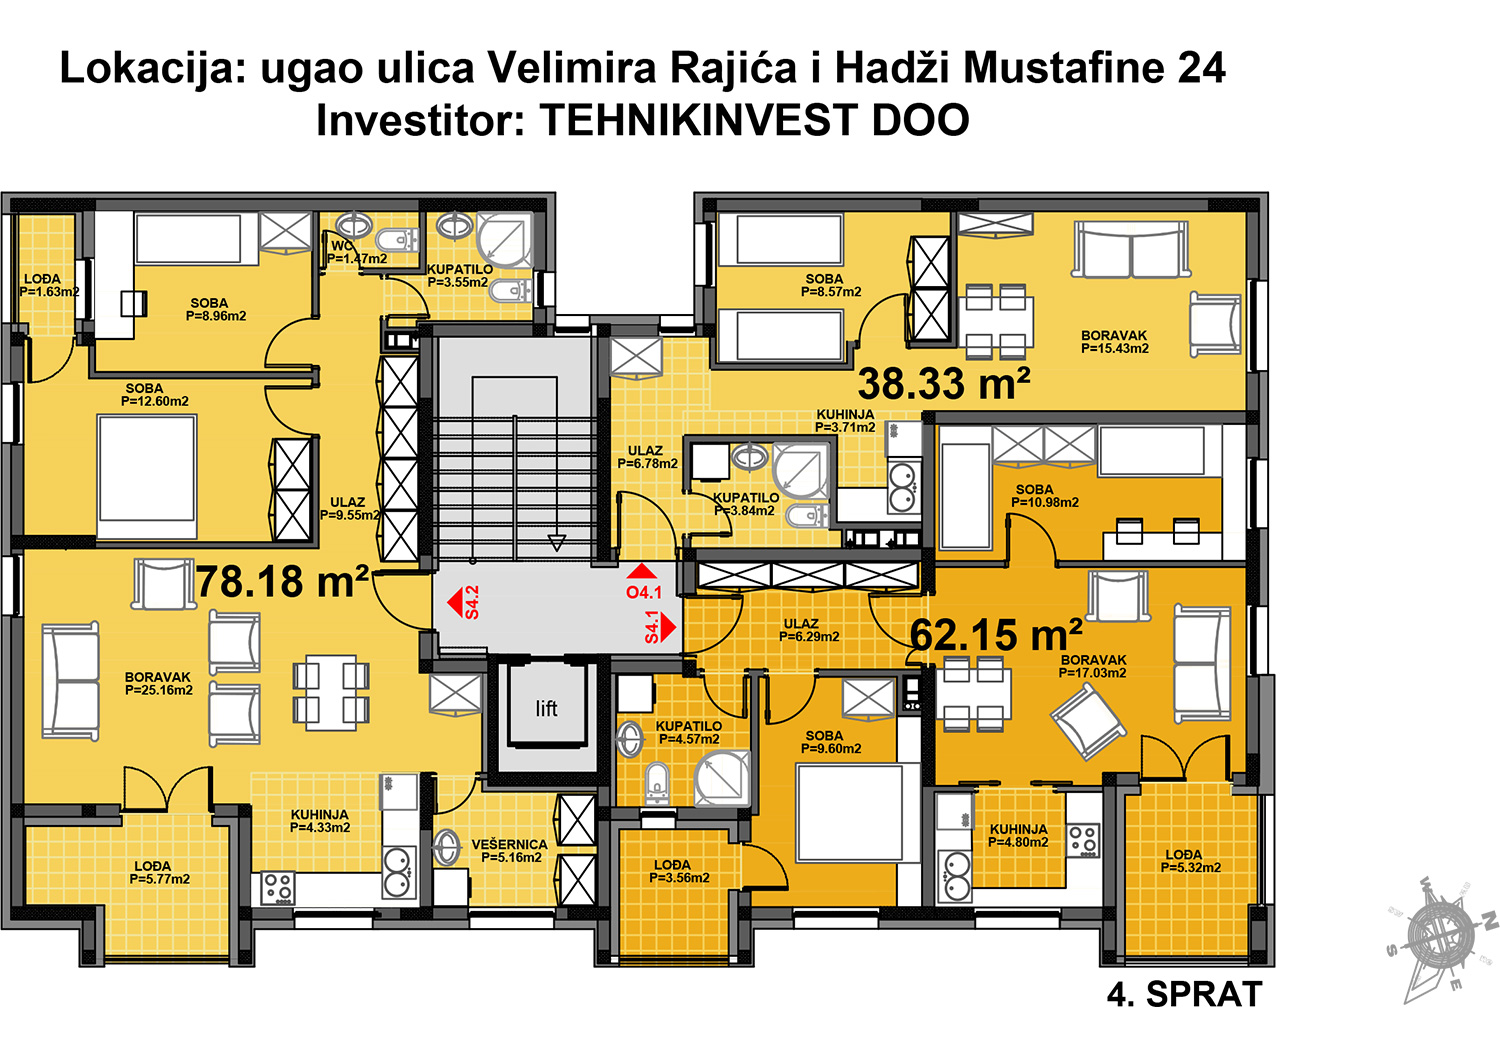 Beograd - Hadži Mustafina 24, 4. sprat